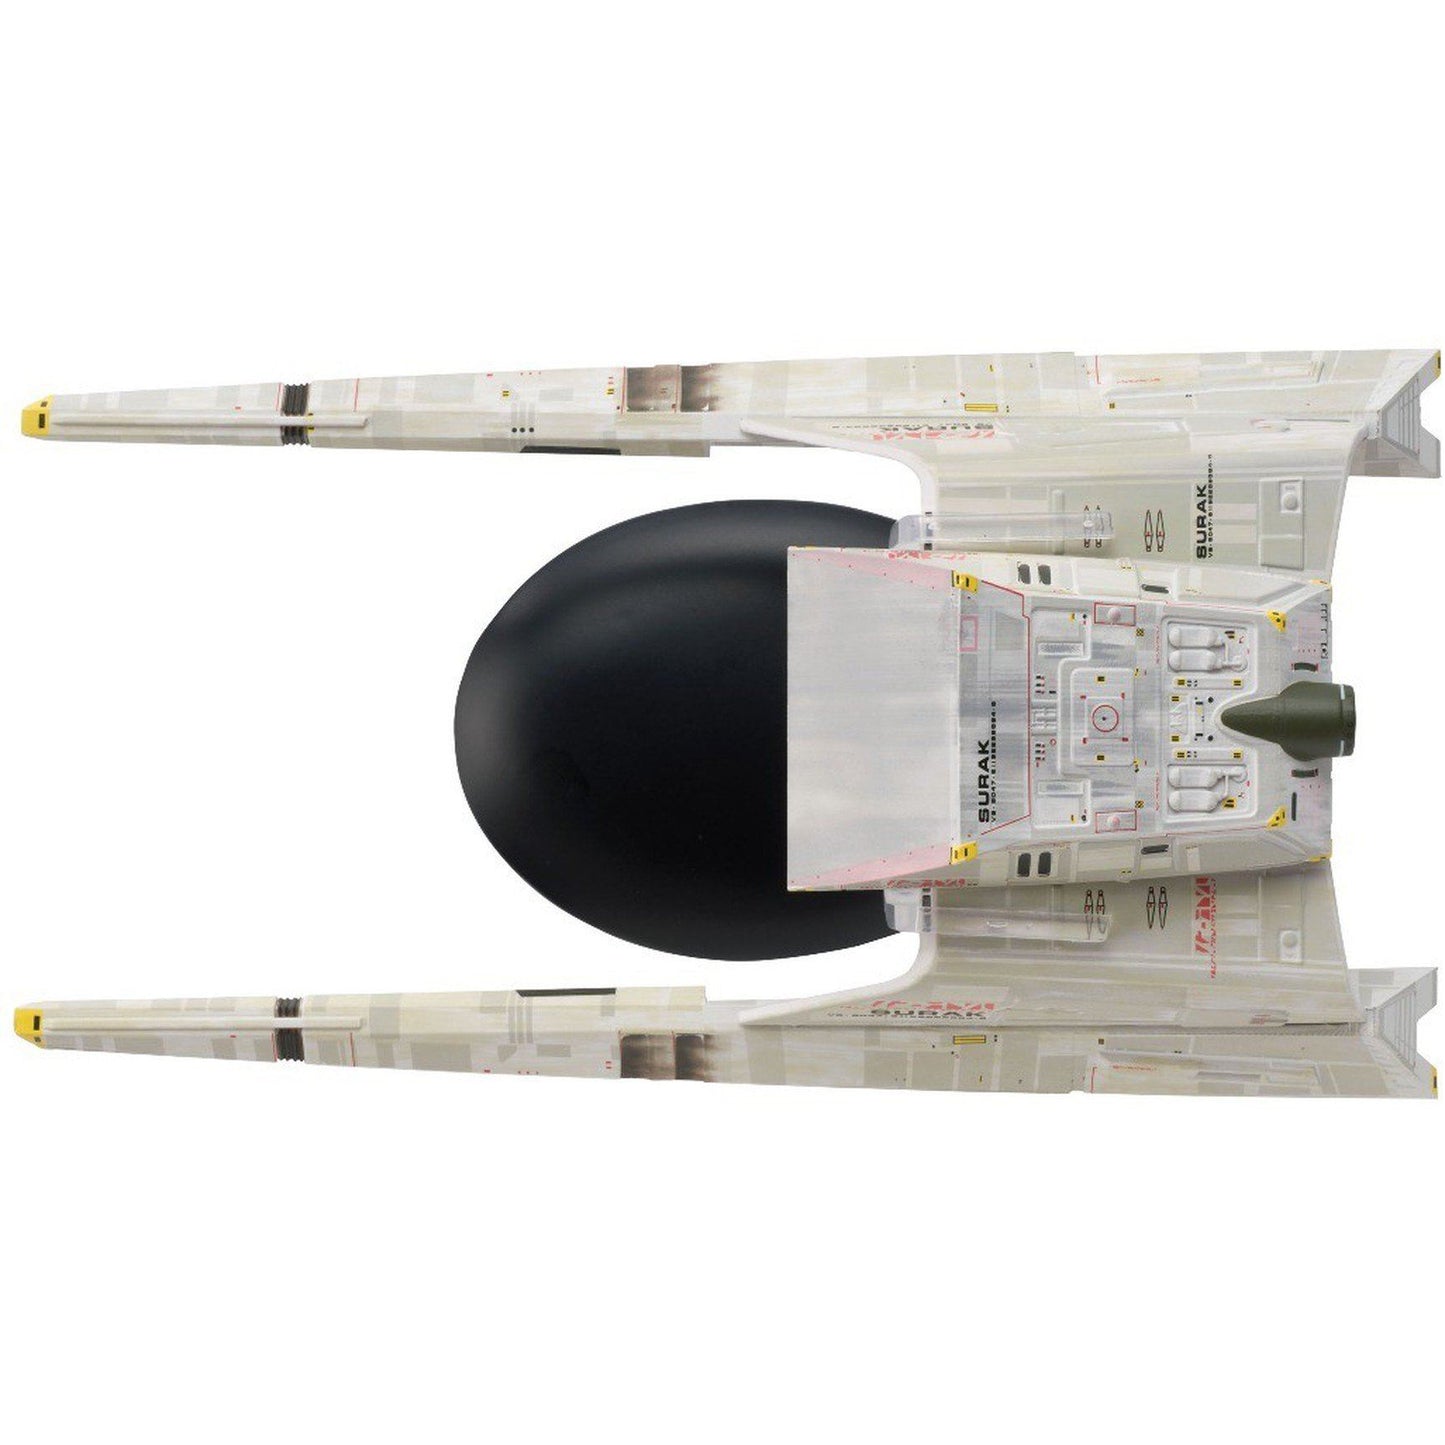 # 21 Modèle de navette Vulcan à longue portée moulé sous pression (Star Trek)